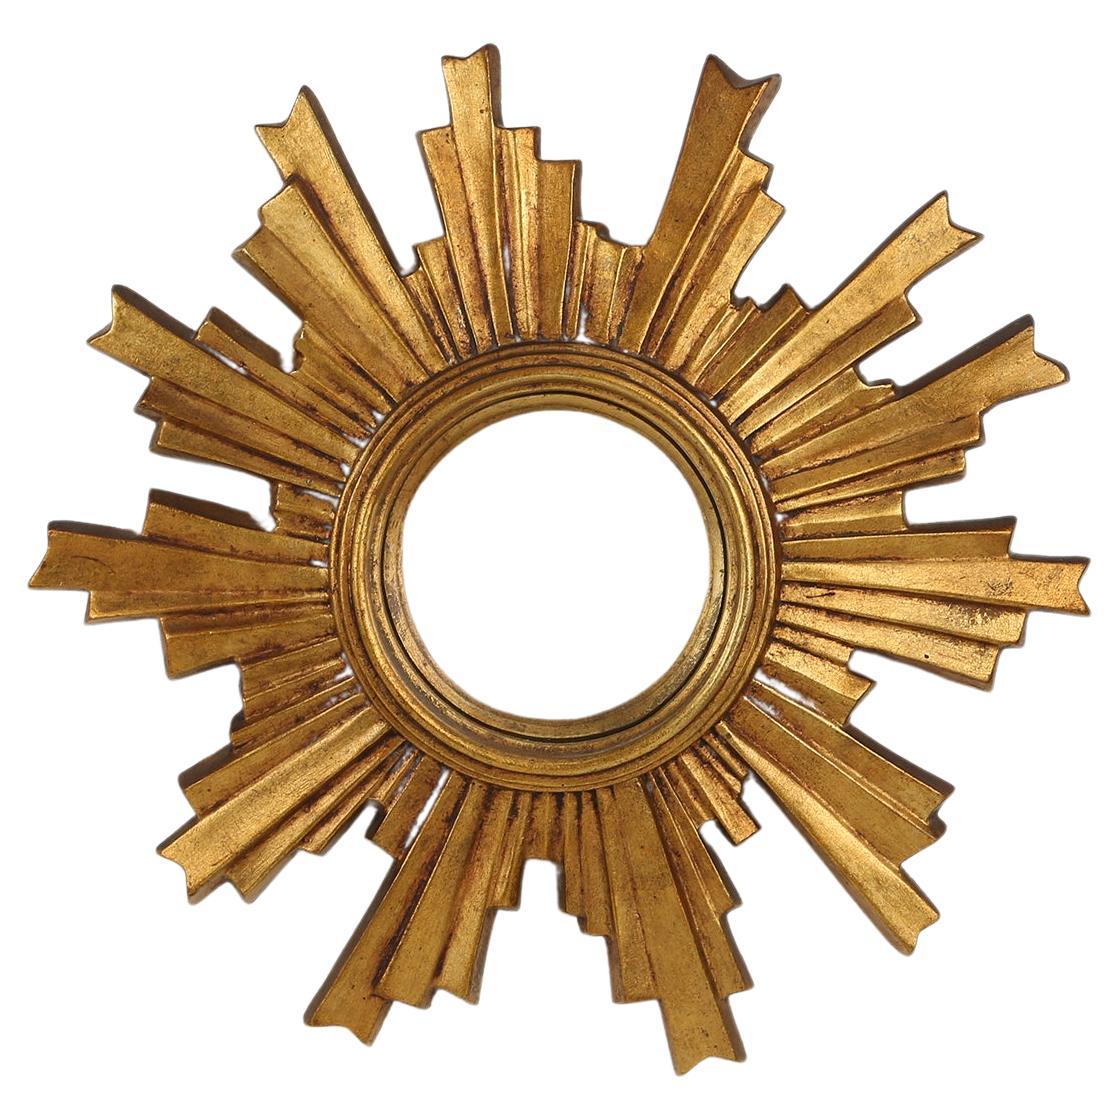 Golden sun mirror made around 1960.